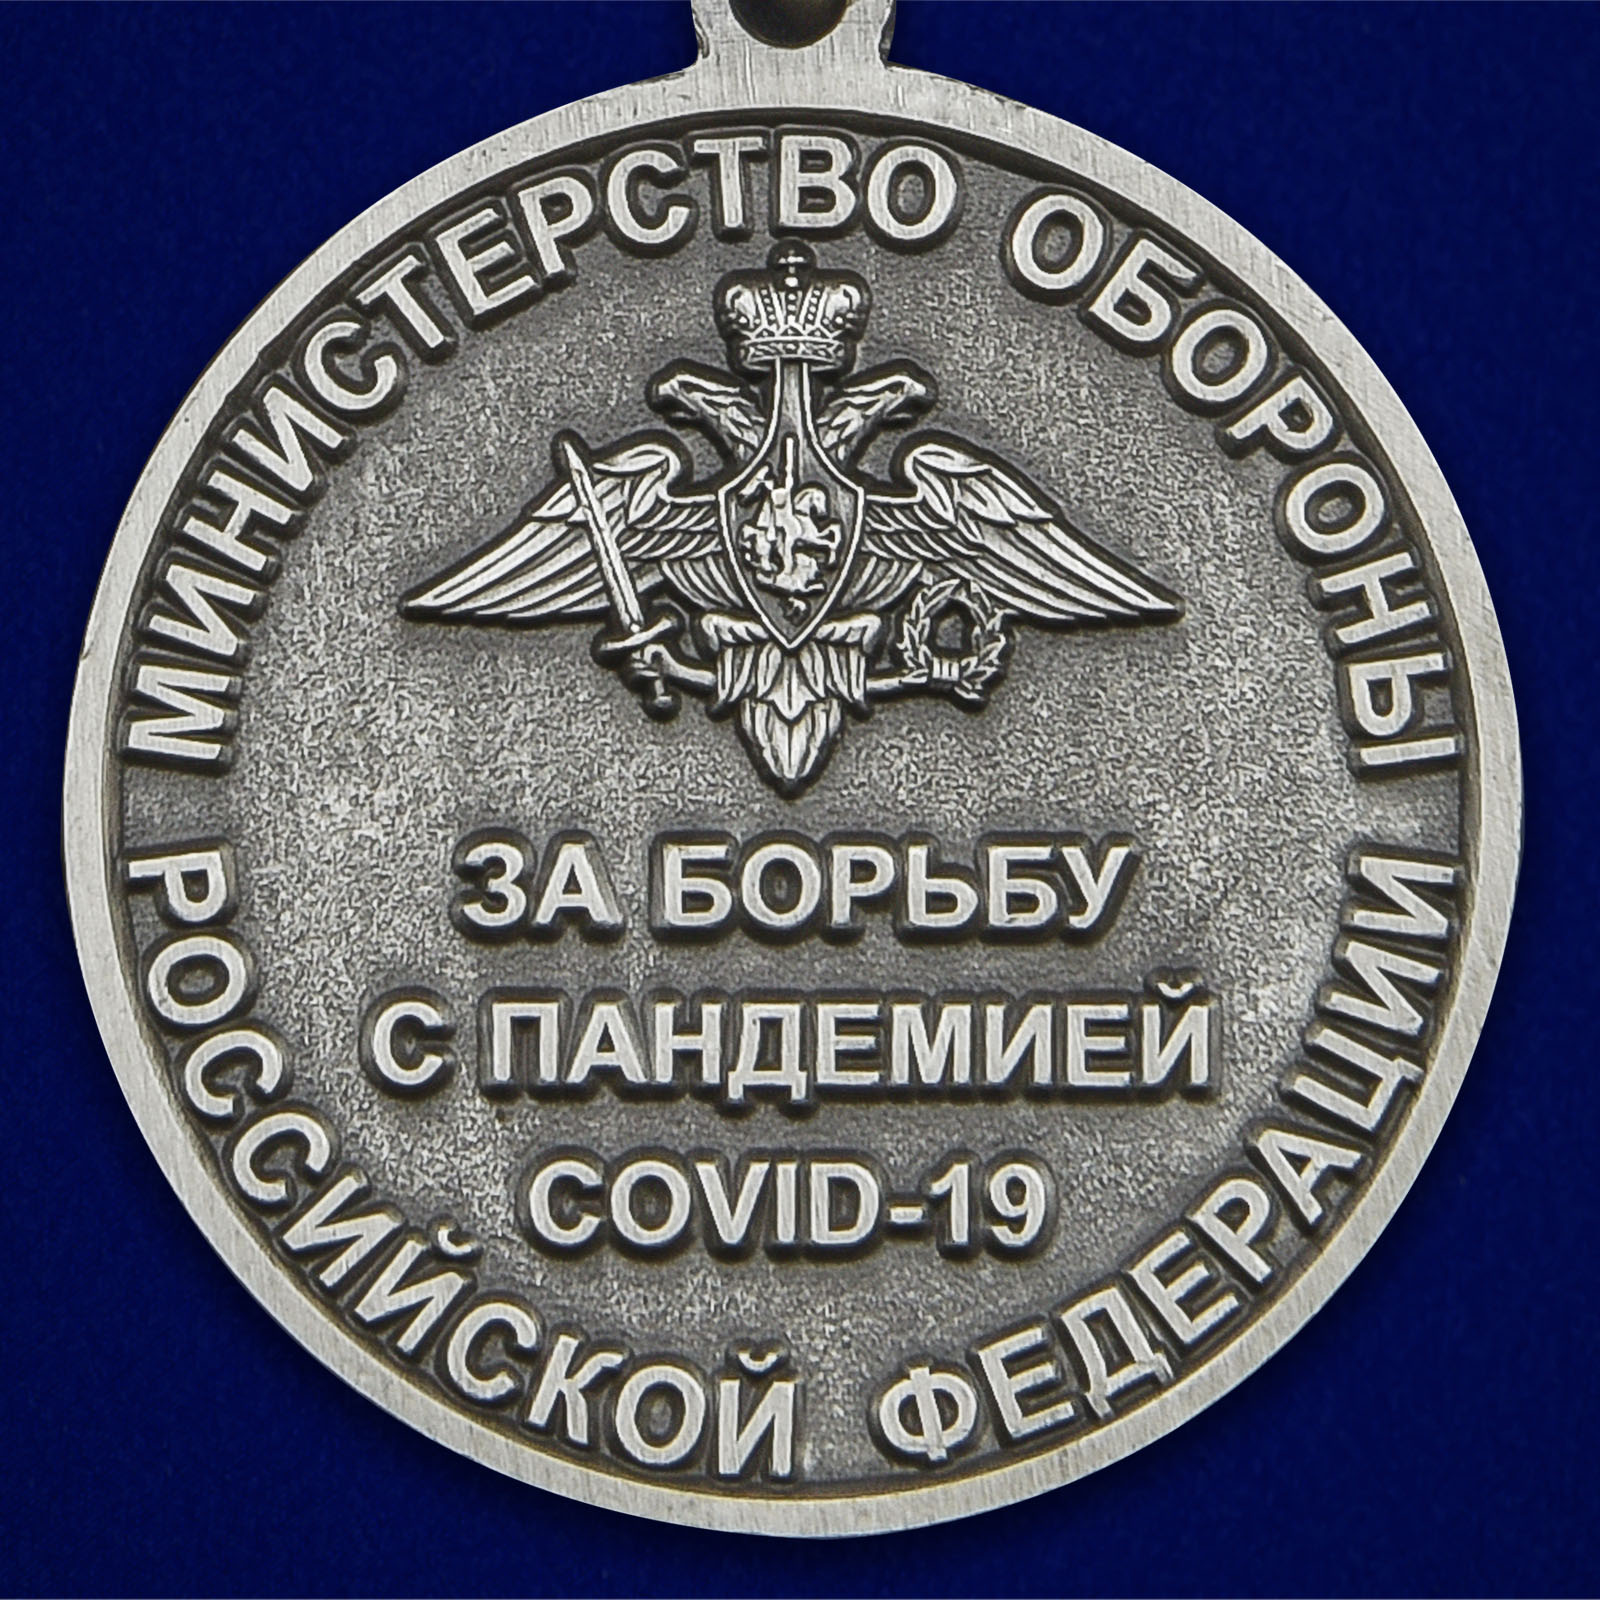 Наградная медаль "За борьбу с пандемией COVID-19" 